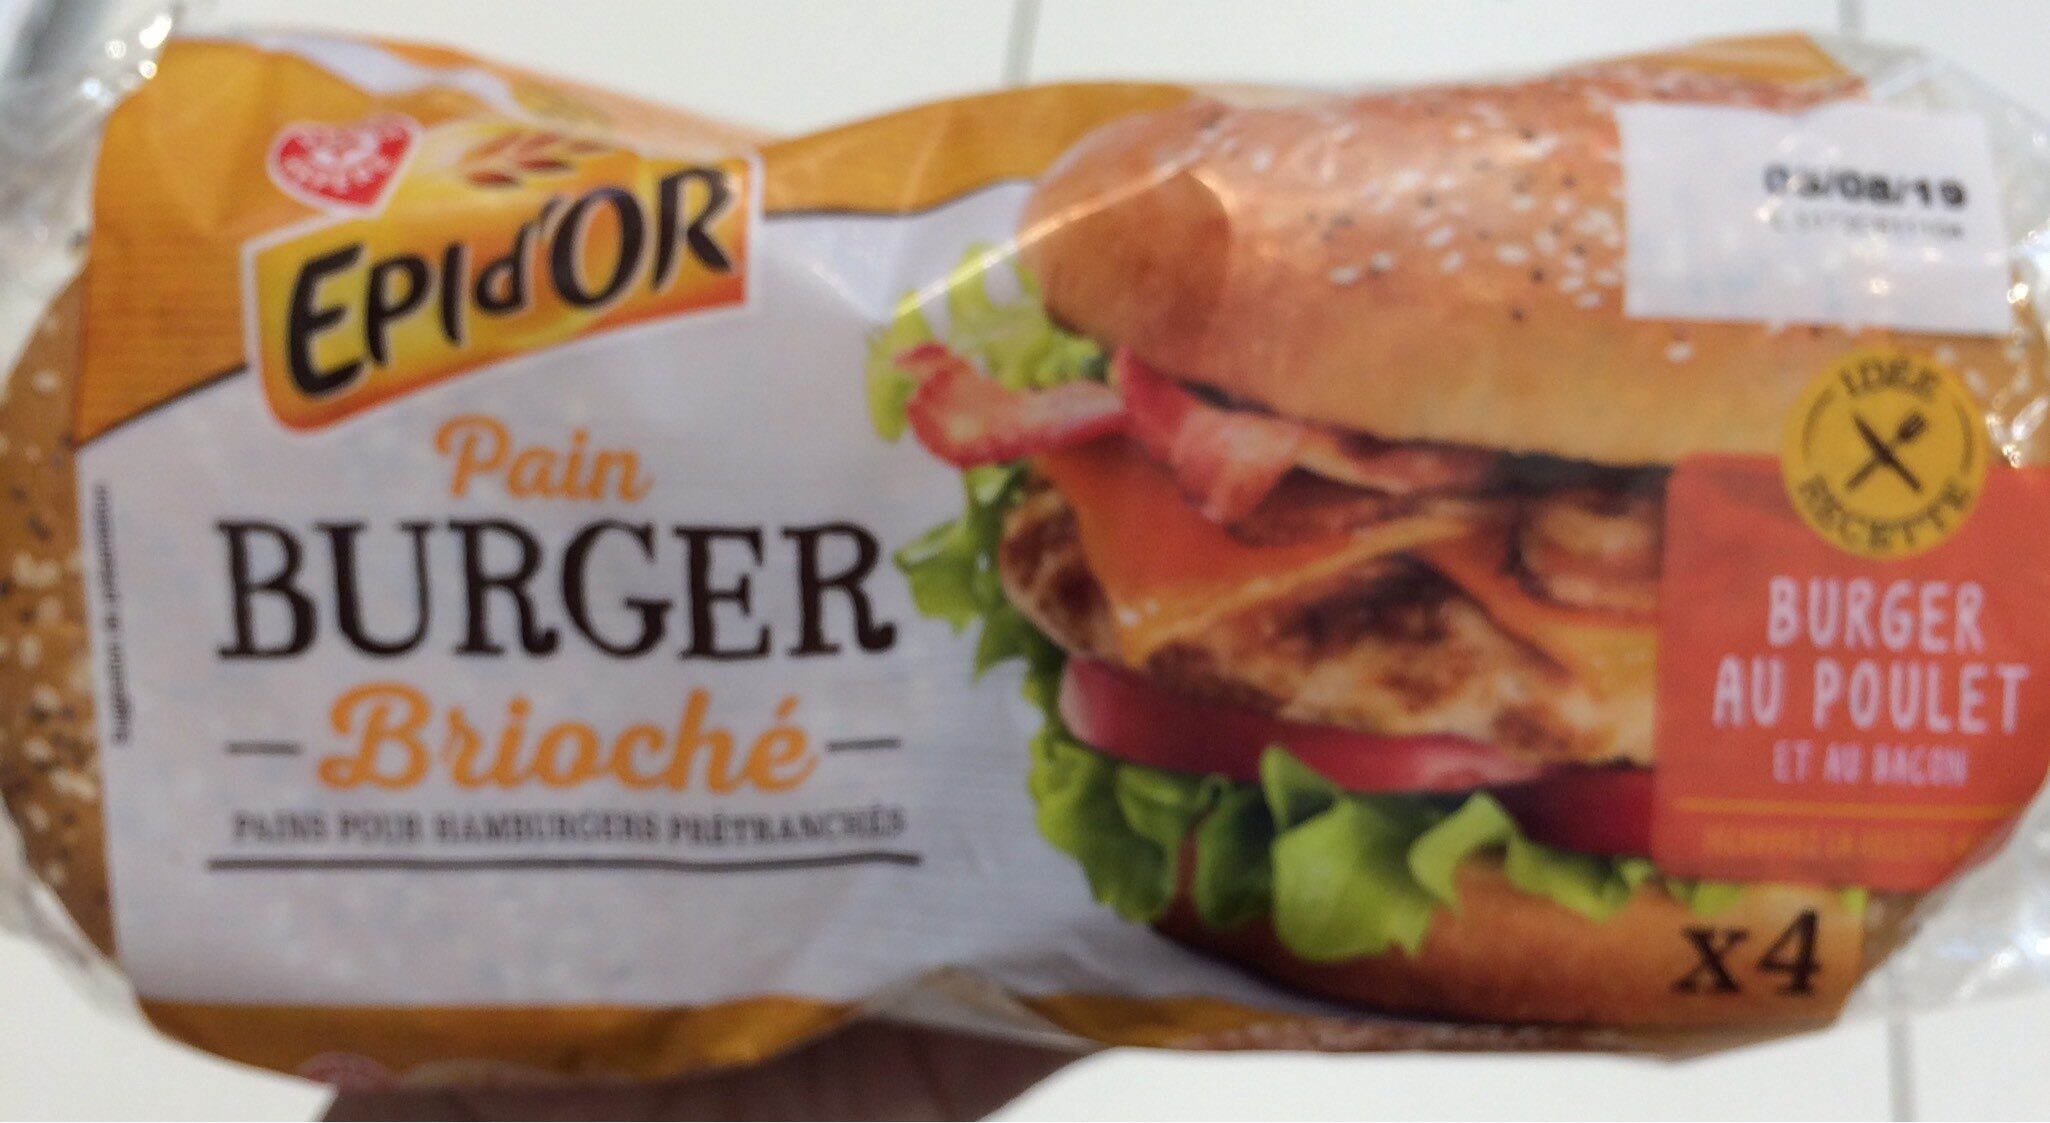 Pain burger géant brioche - Product - fr